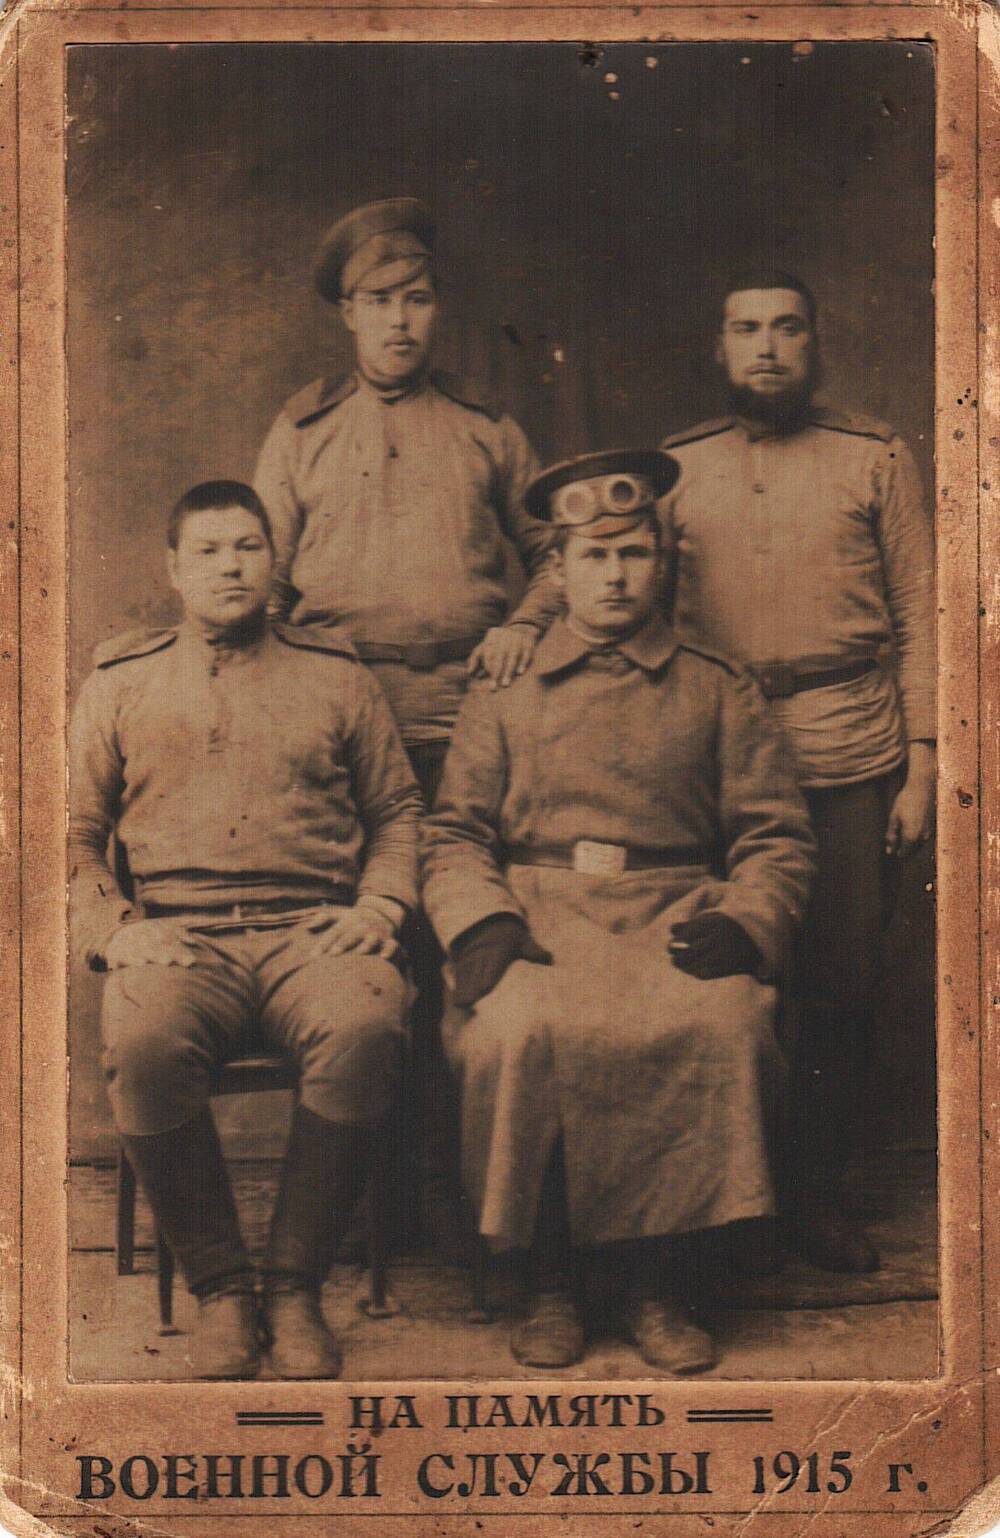 Фото коллективное: группа неизвестных военнослужащих времен 1 мировой войны.